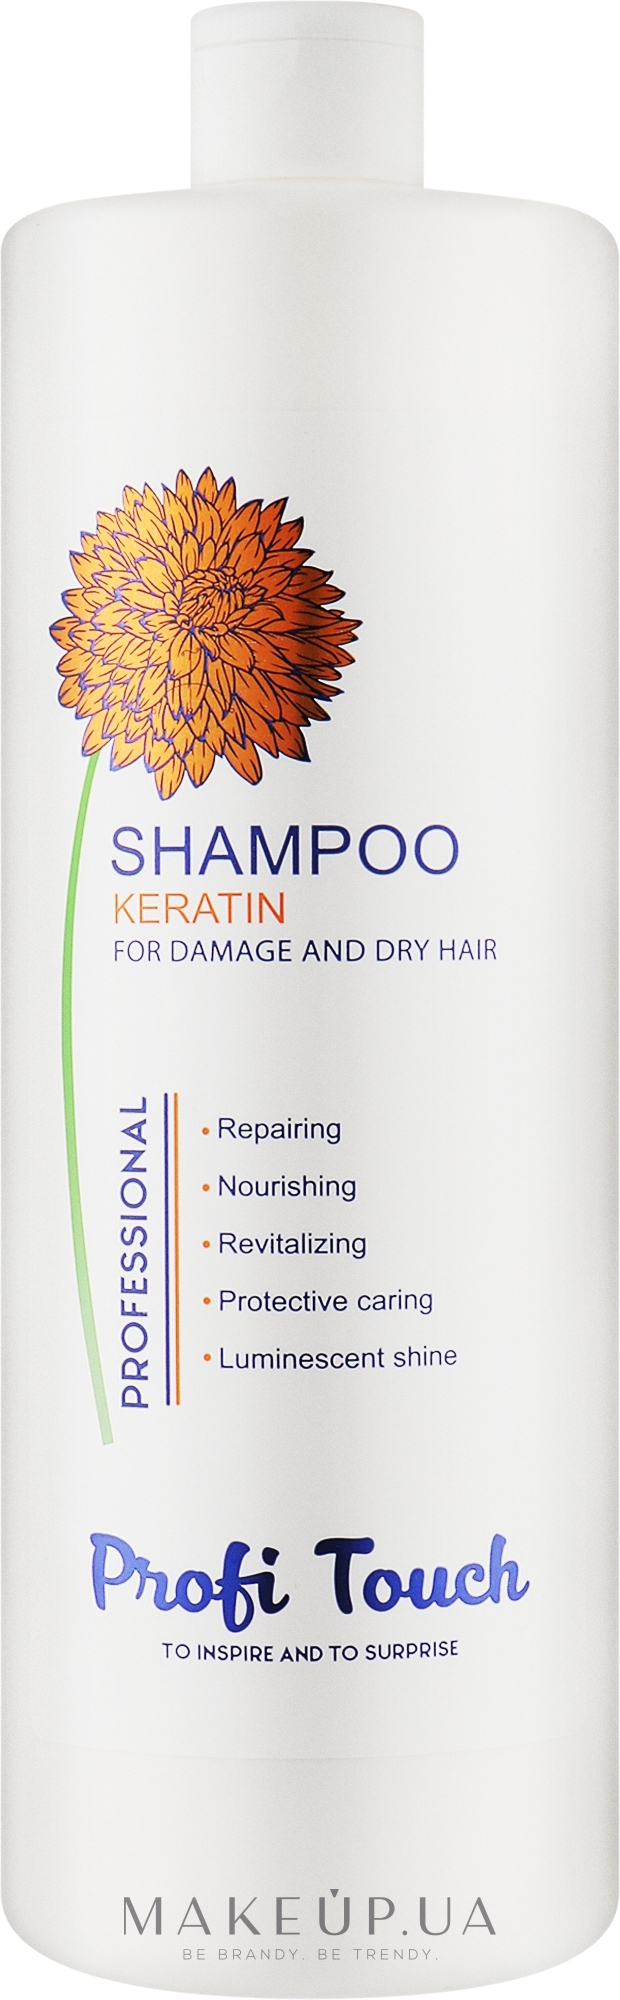 Шампунь для волосся "Keratin" - Profi Touch Shampoo  — фото 1000g